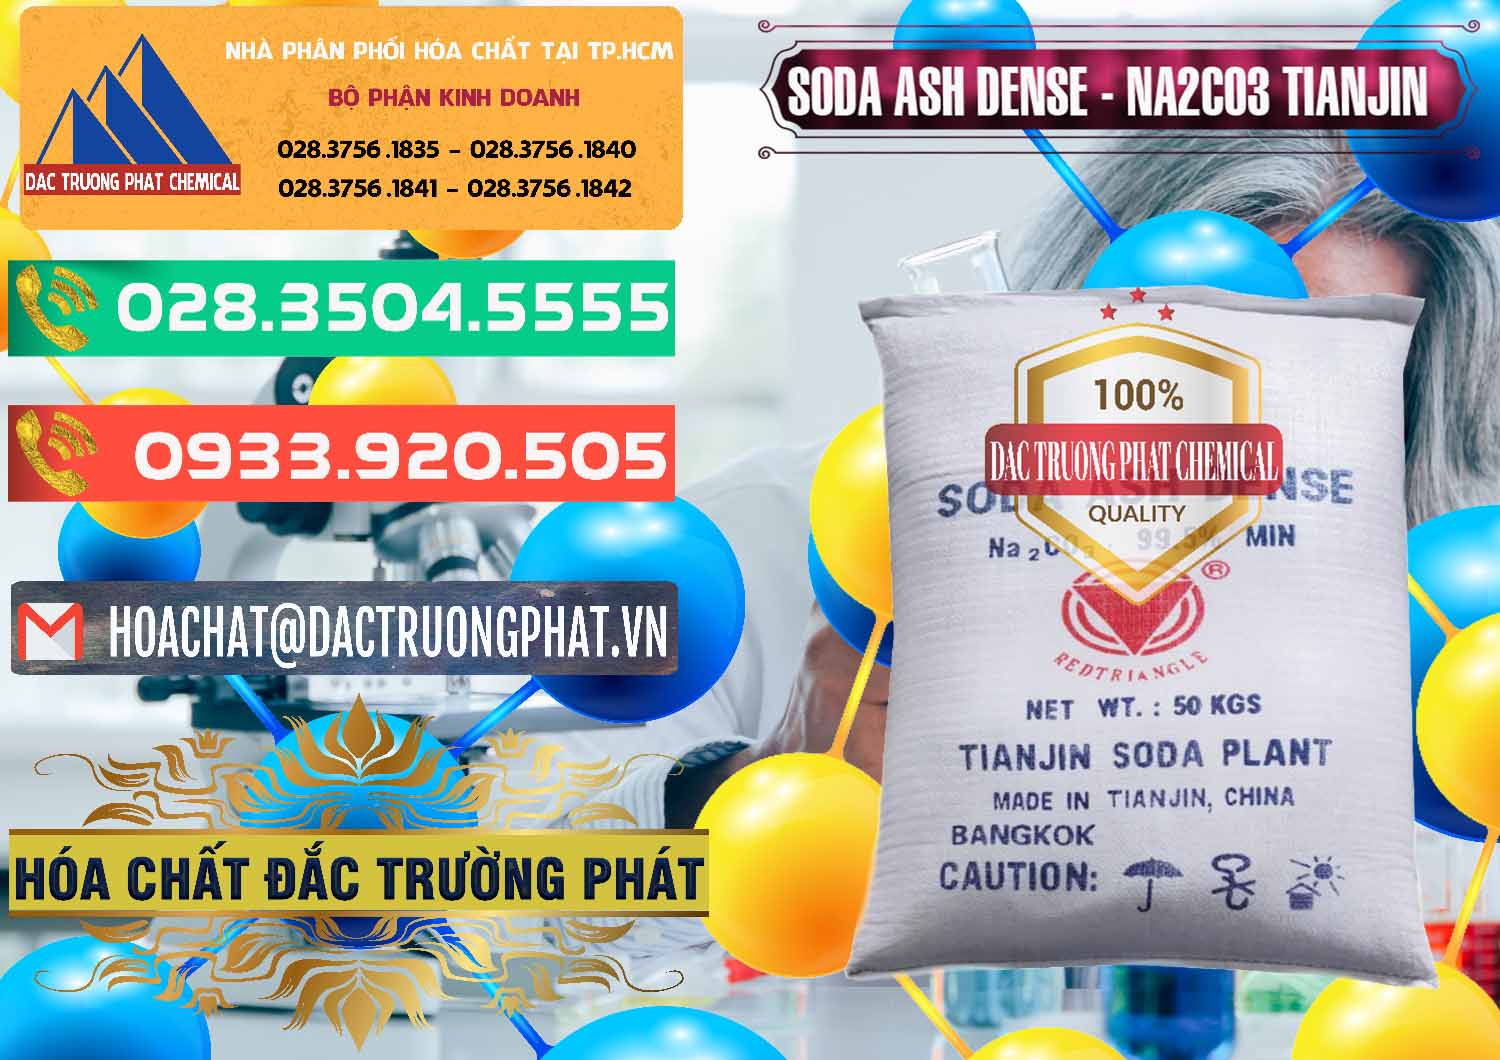 Nơi bán & phân phối Soda Ash Dense - NA2CO3 Tianjin Trung Quốc China - 0336 - Chuyên cung cấp & bán hóa chất tại TP.HCM - congtyhoachat.com.vn